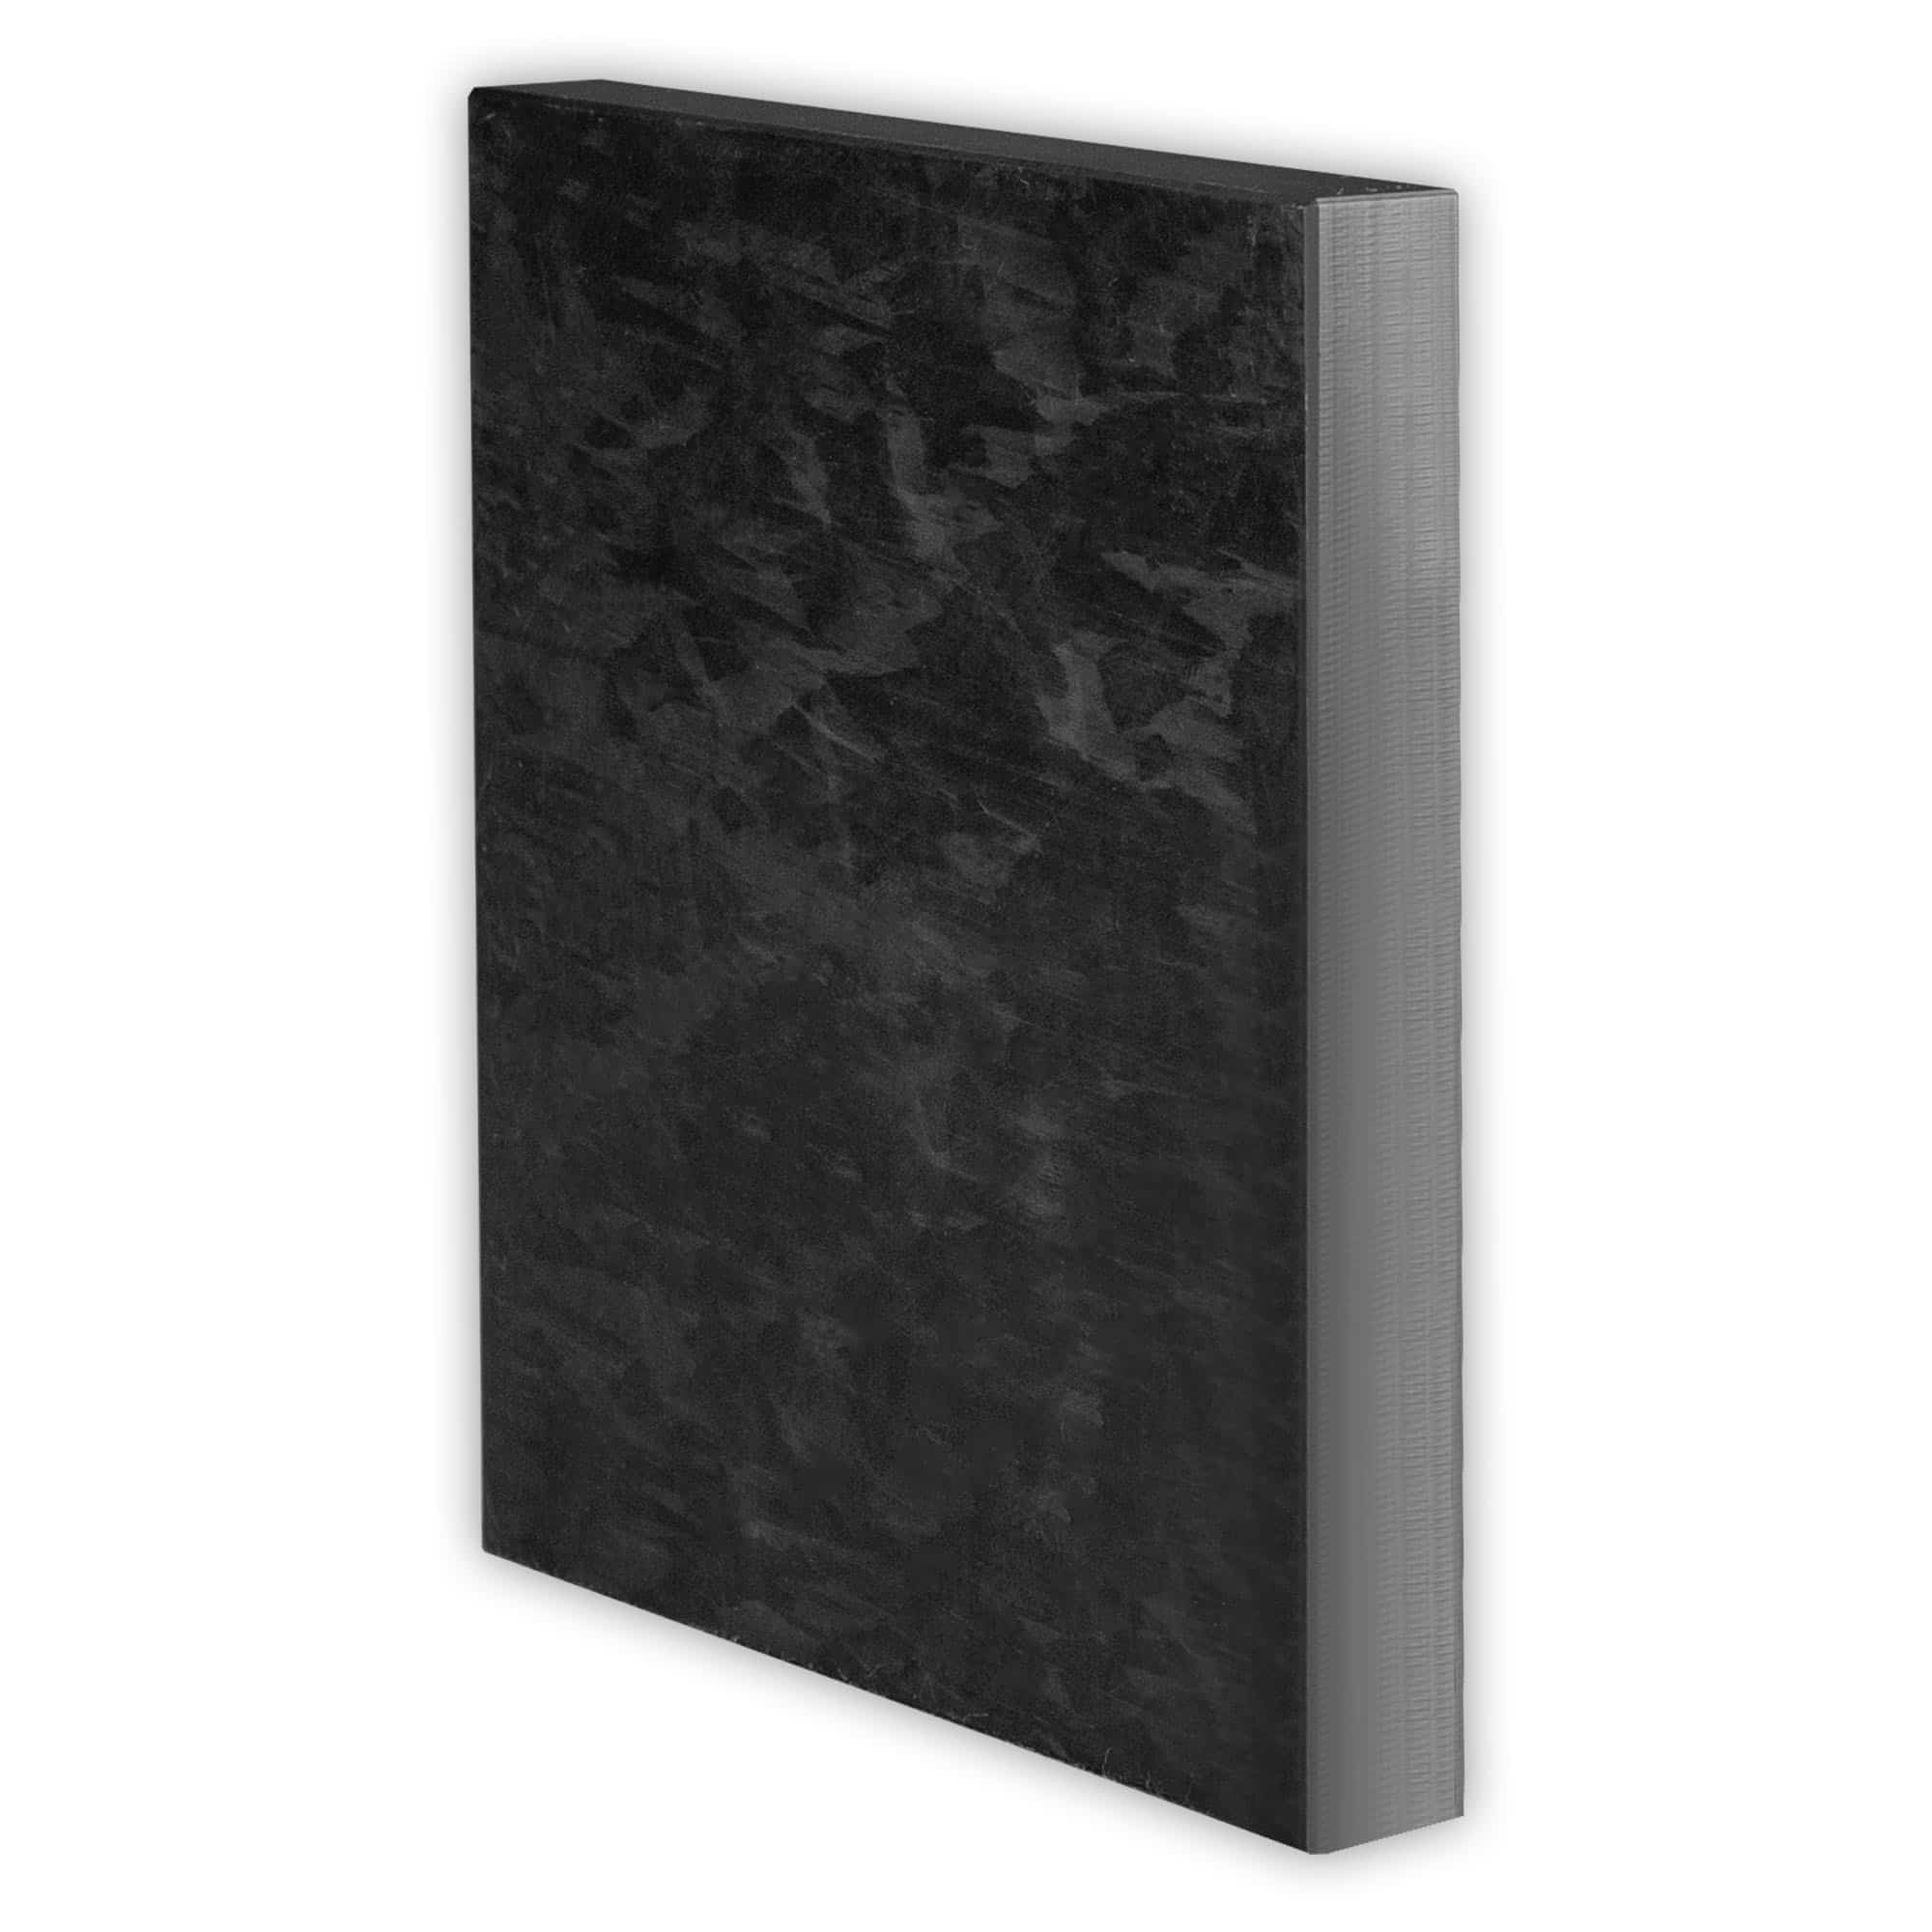 C schwarz u weiß Stärke 20mm POM Acetal Zuschnitt Platte aus POM 285,80€/m² 